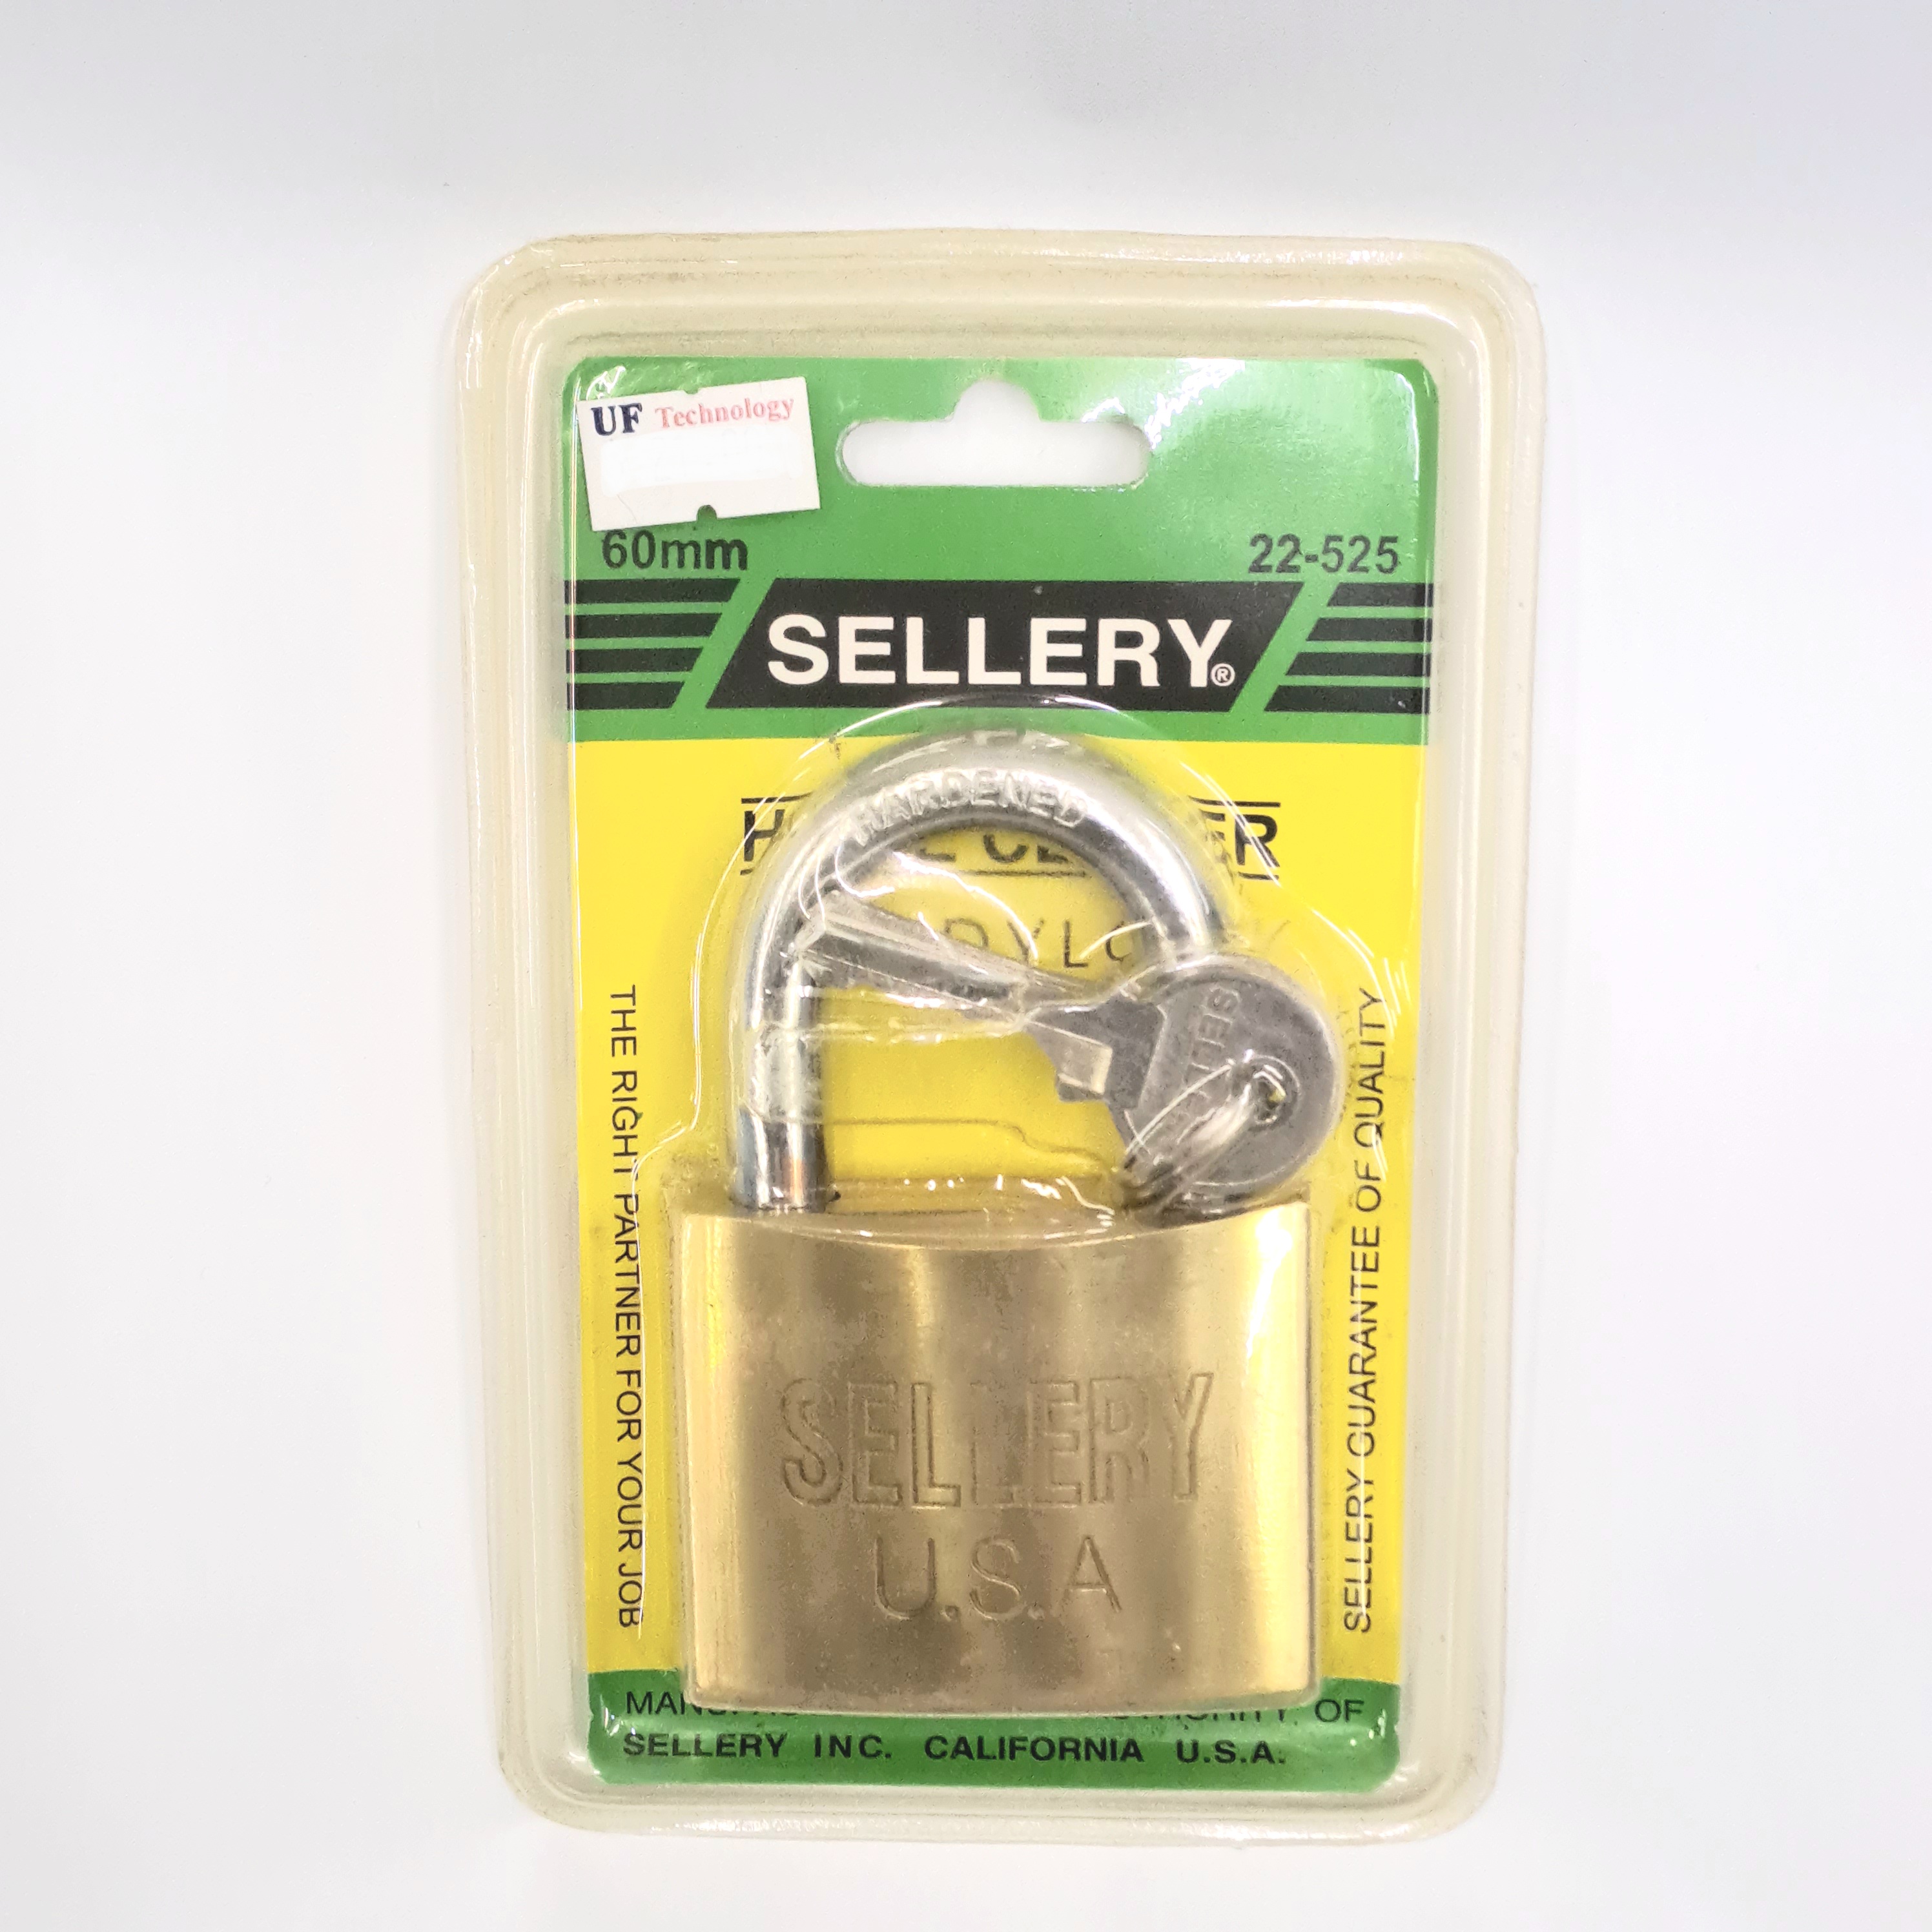 Sellery 22-520 Brass Handy Lock, Size 60 mm